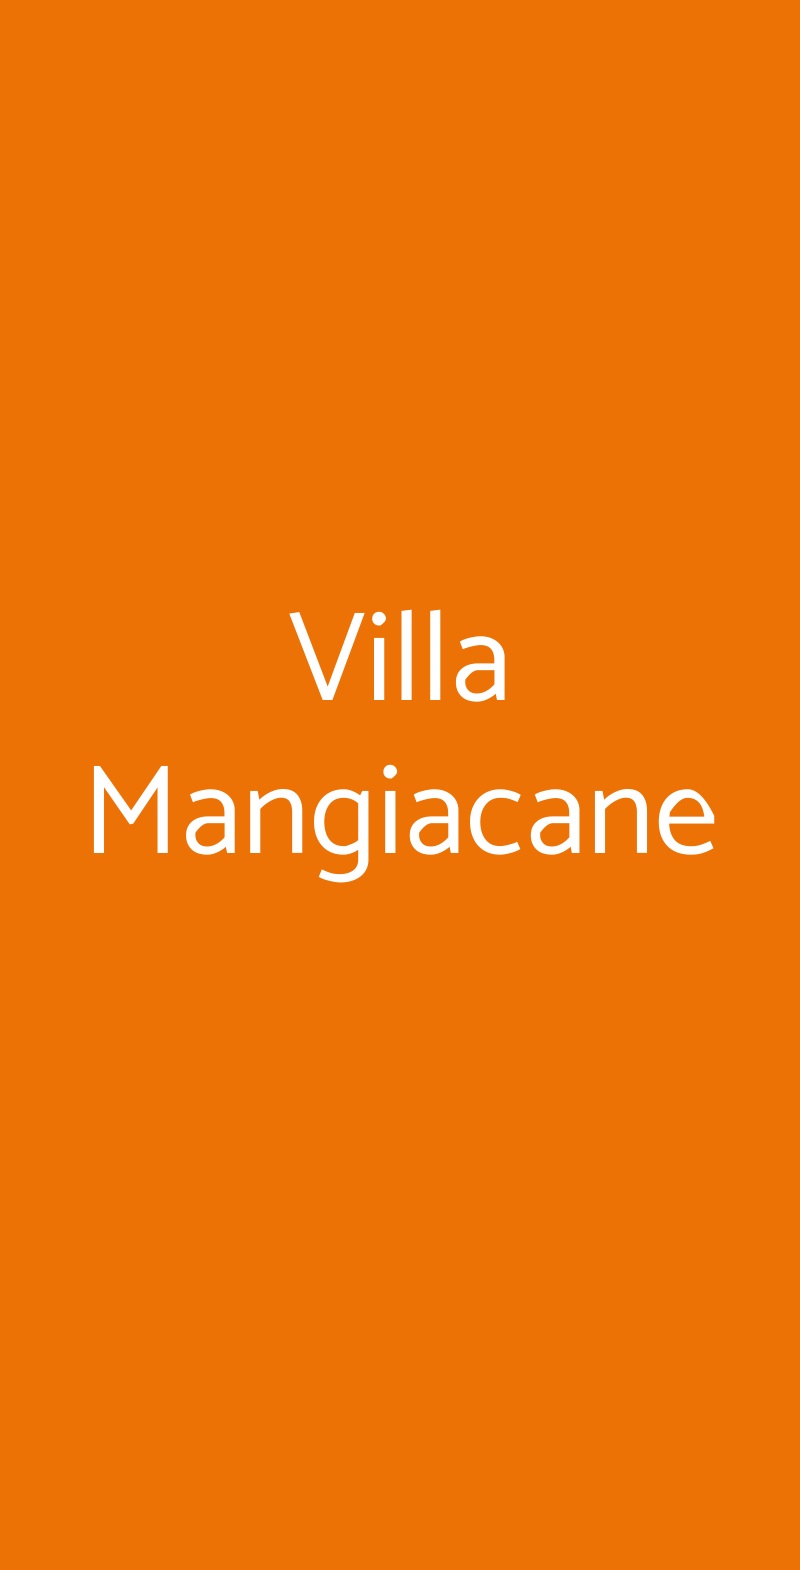 Villa Mangiacane San Casciano in Val di Pesa menù 1 pagina